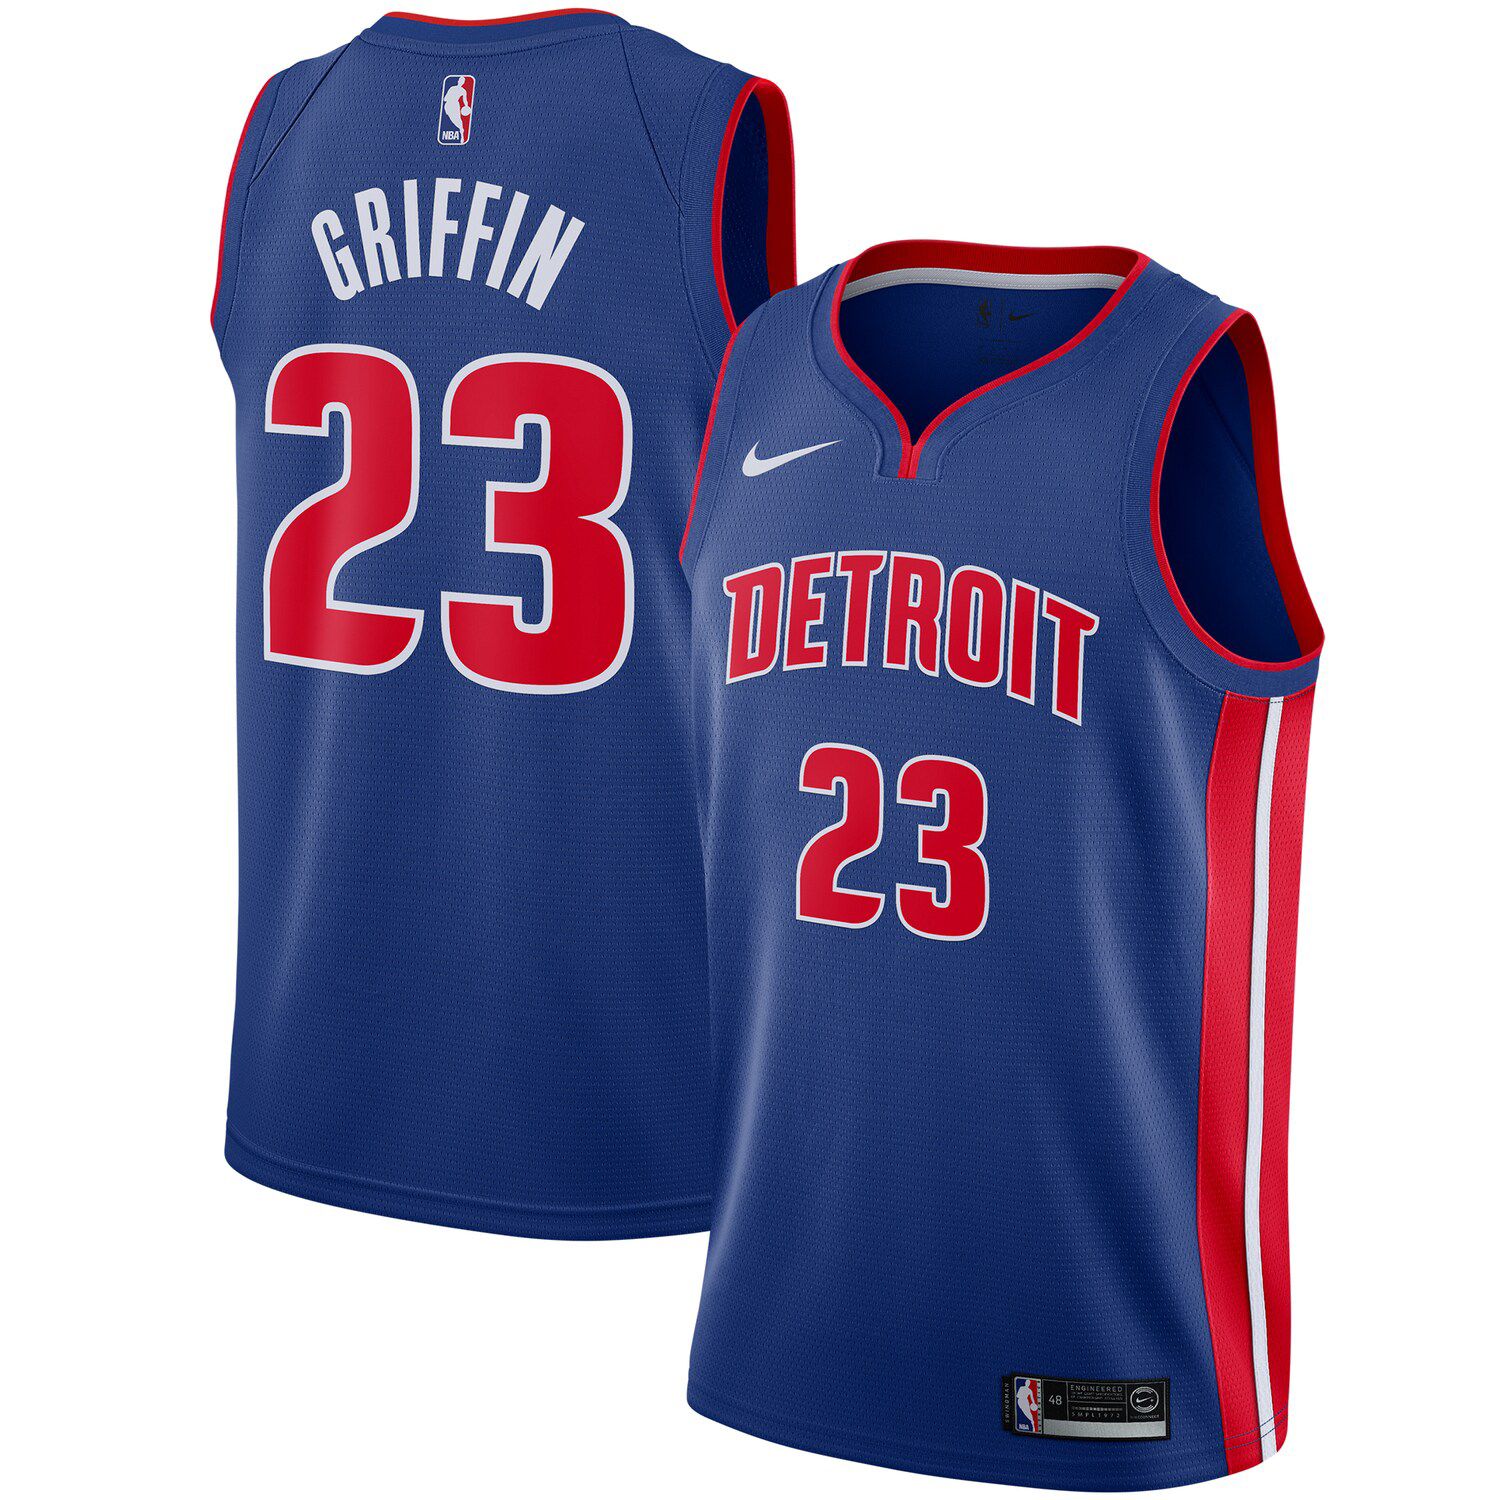 Detroit Pistons Swingman Jersey 